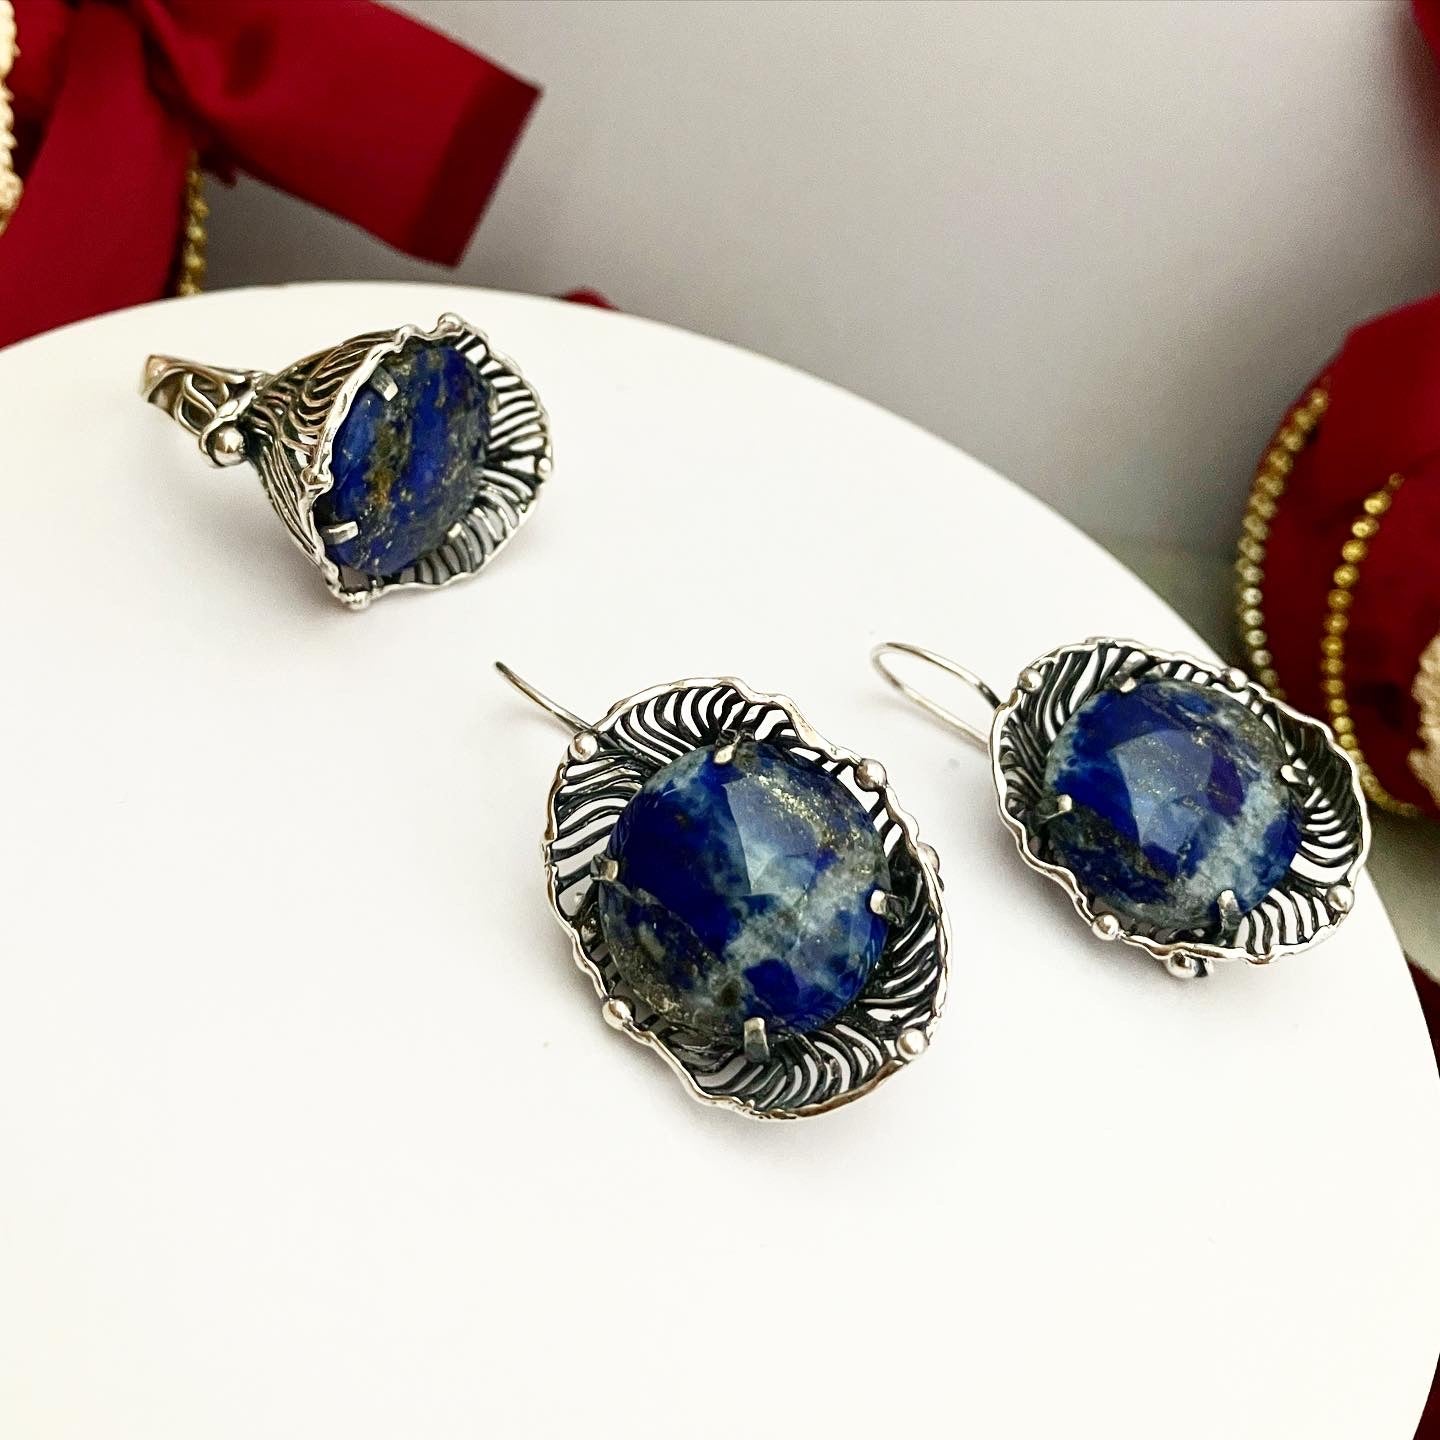 ring with lapis lazuli